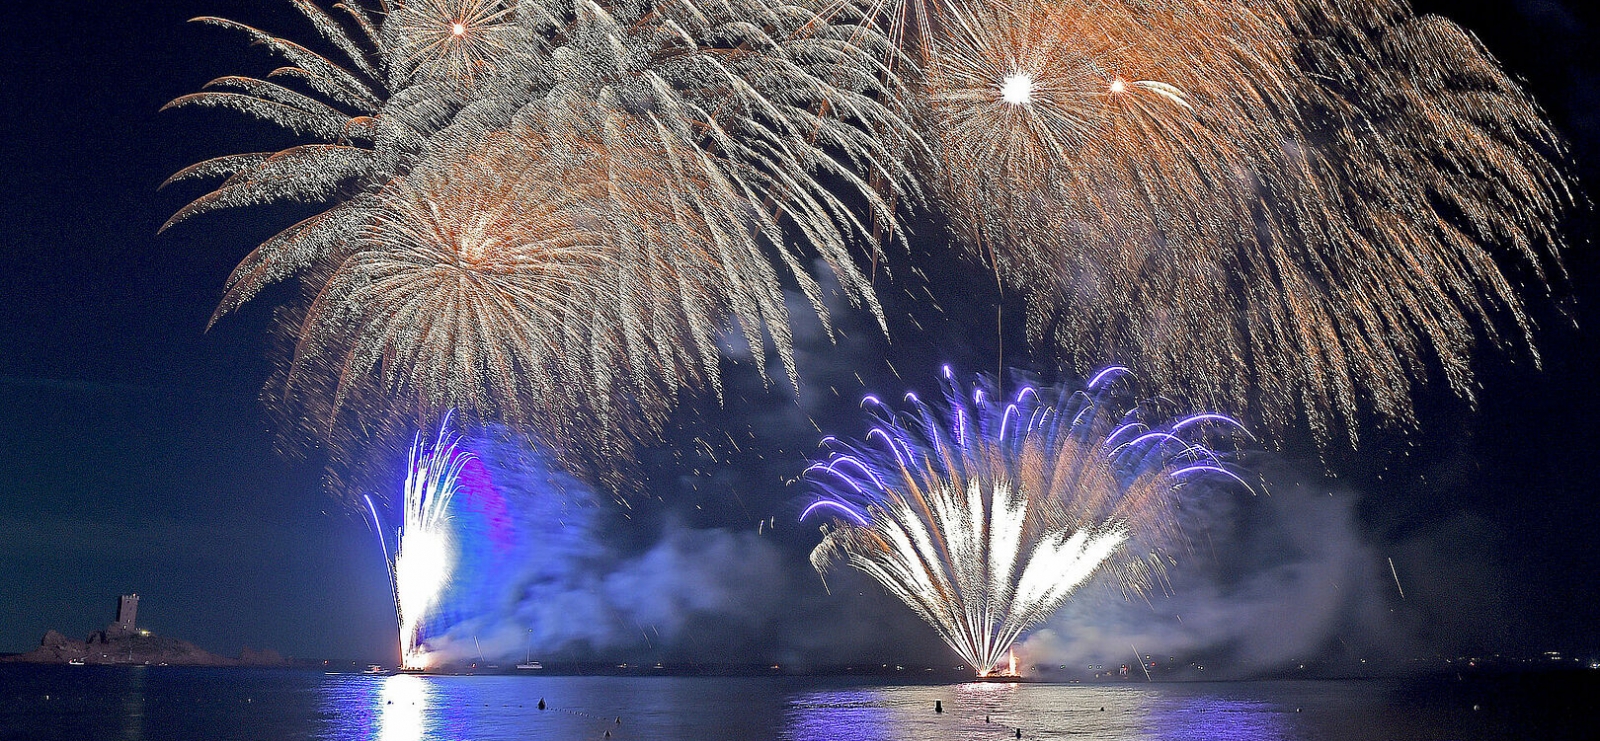 Fireworks on 14 July